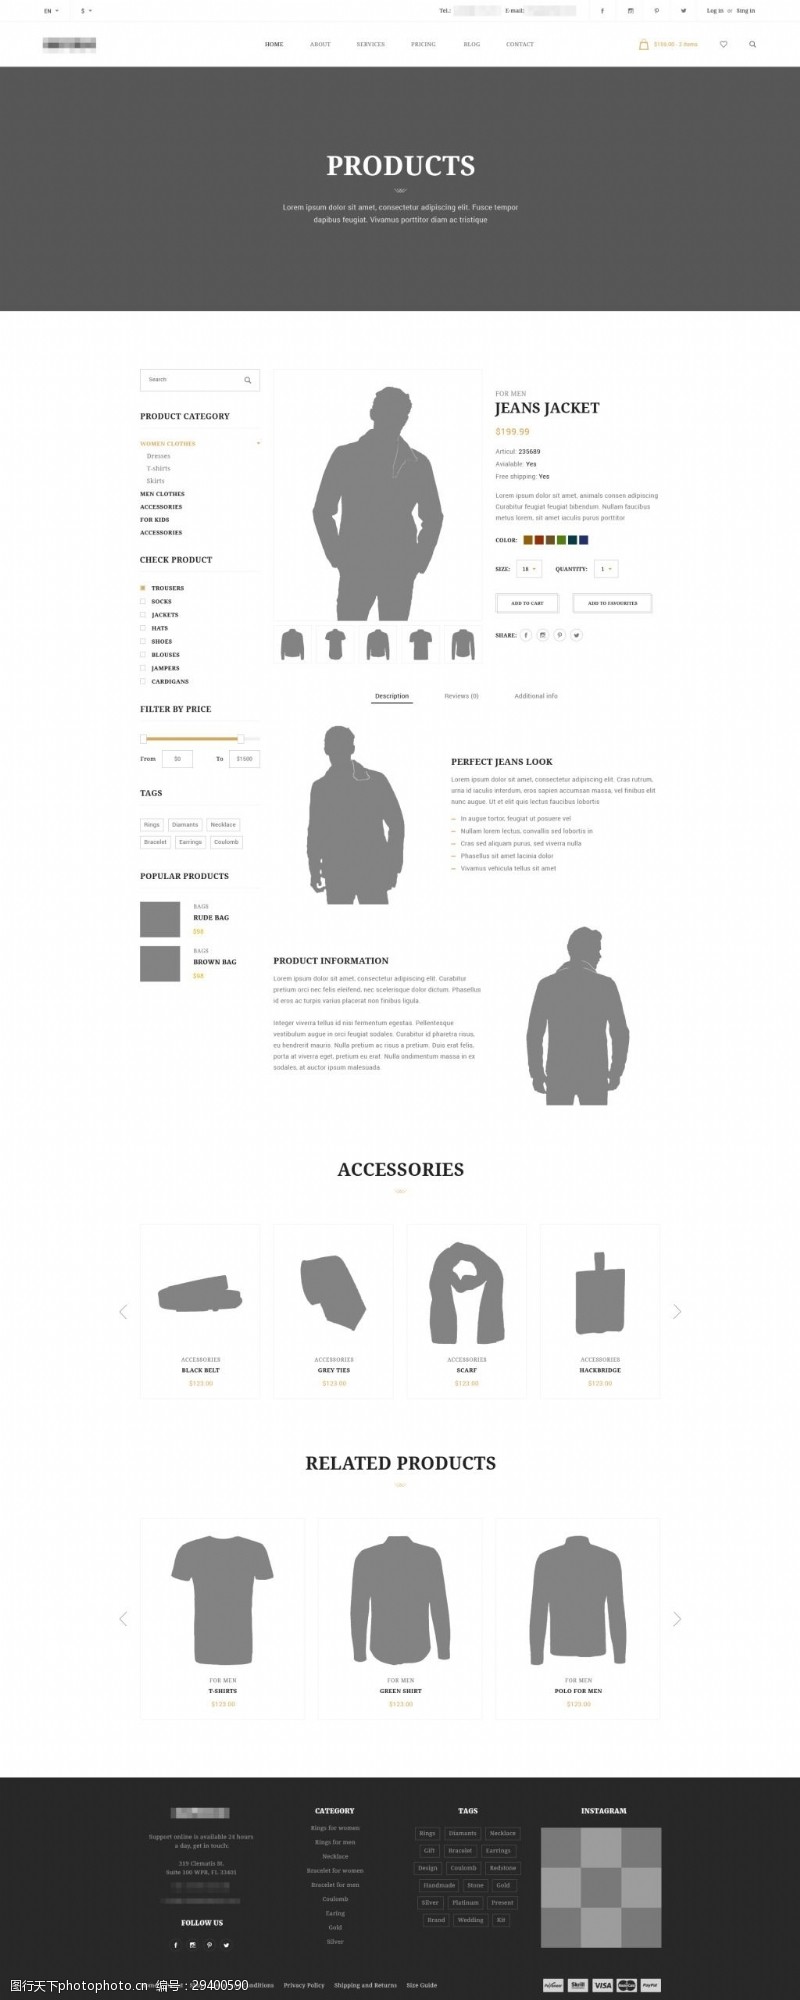 在线购物企业在线服装购物商城网站模板之产品详情